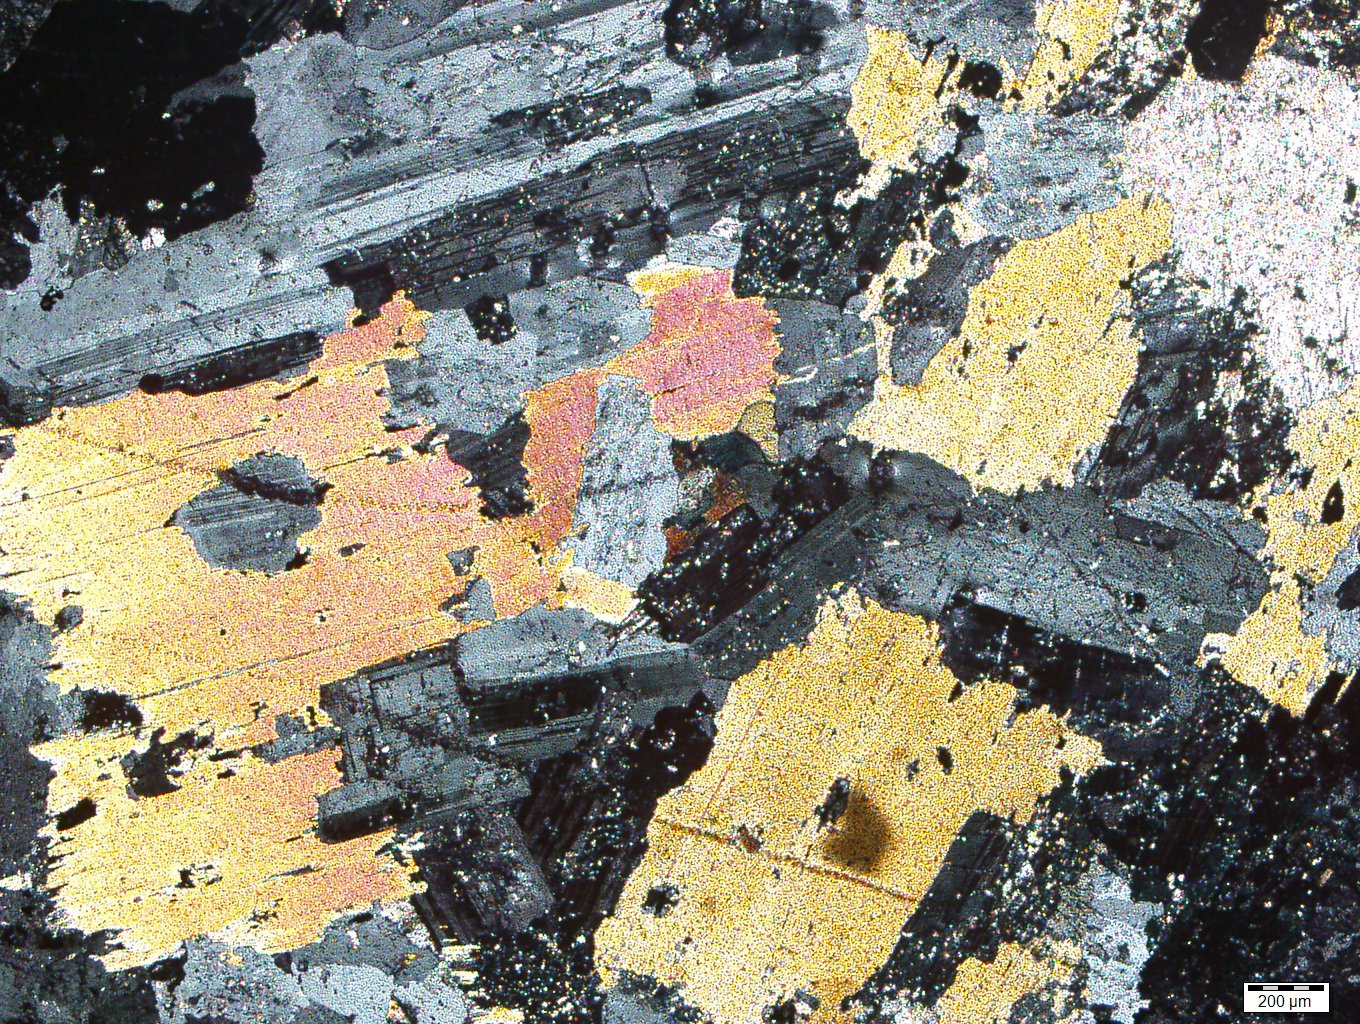 Granitin ışık mikroskobu altındaki görüntüsü